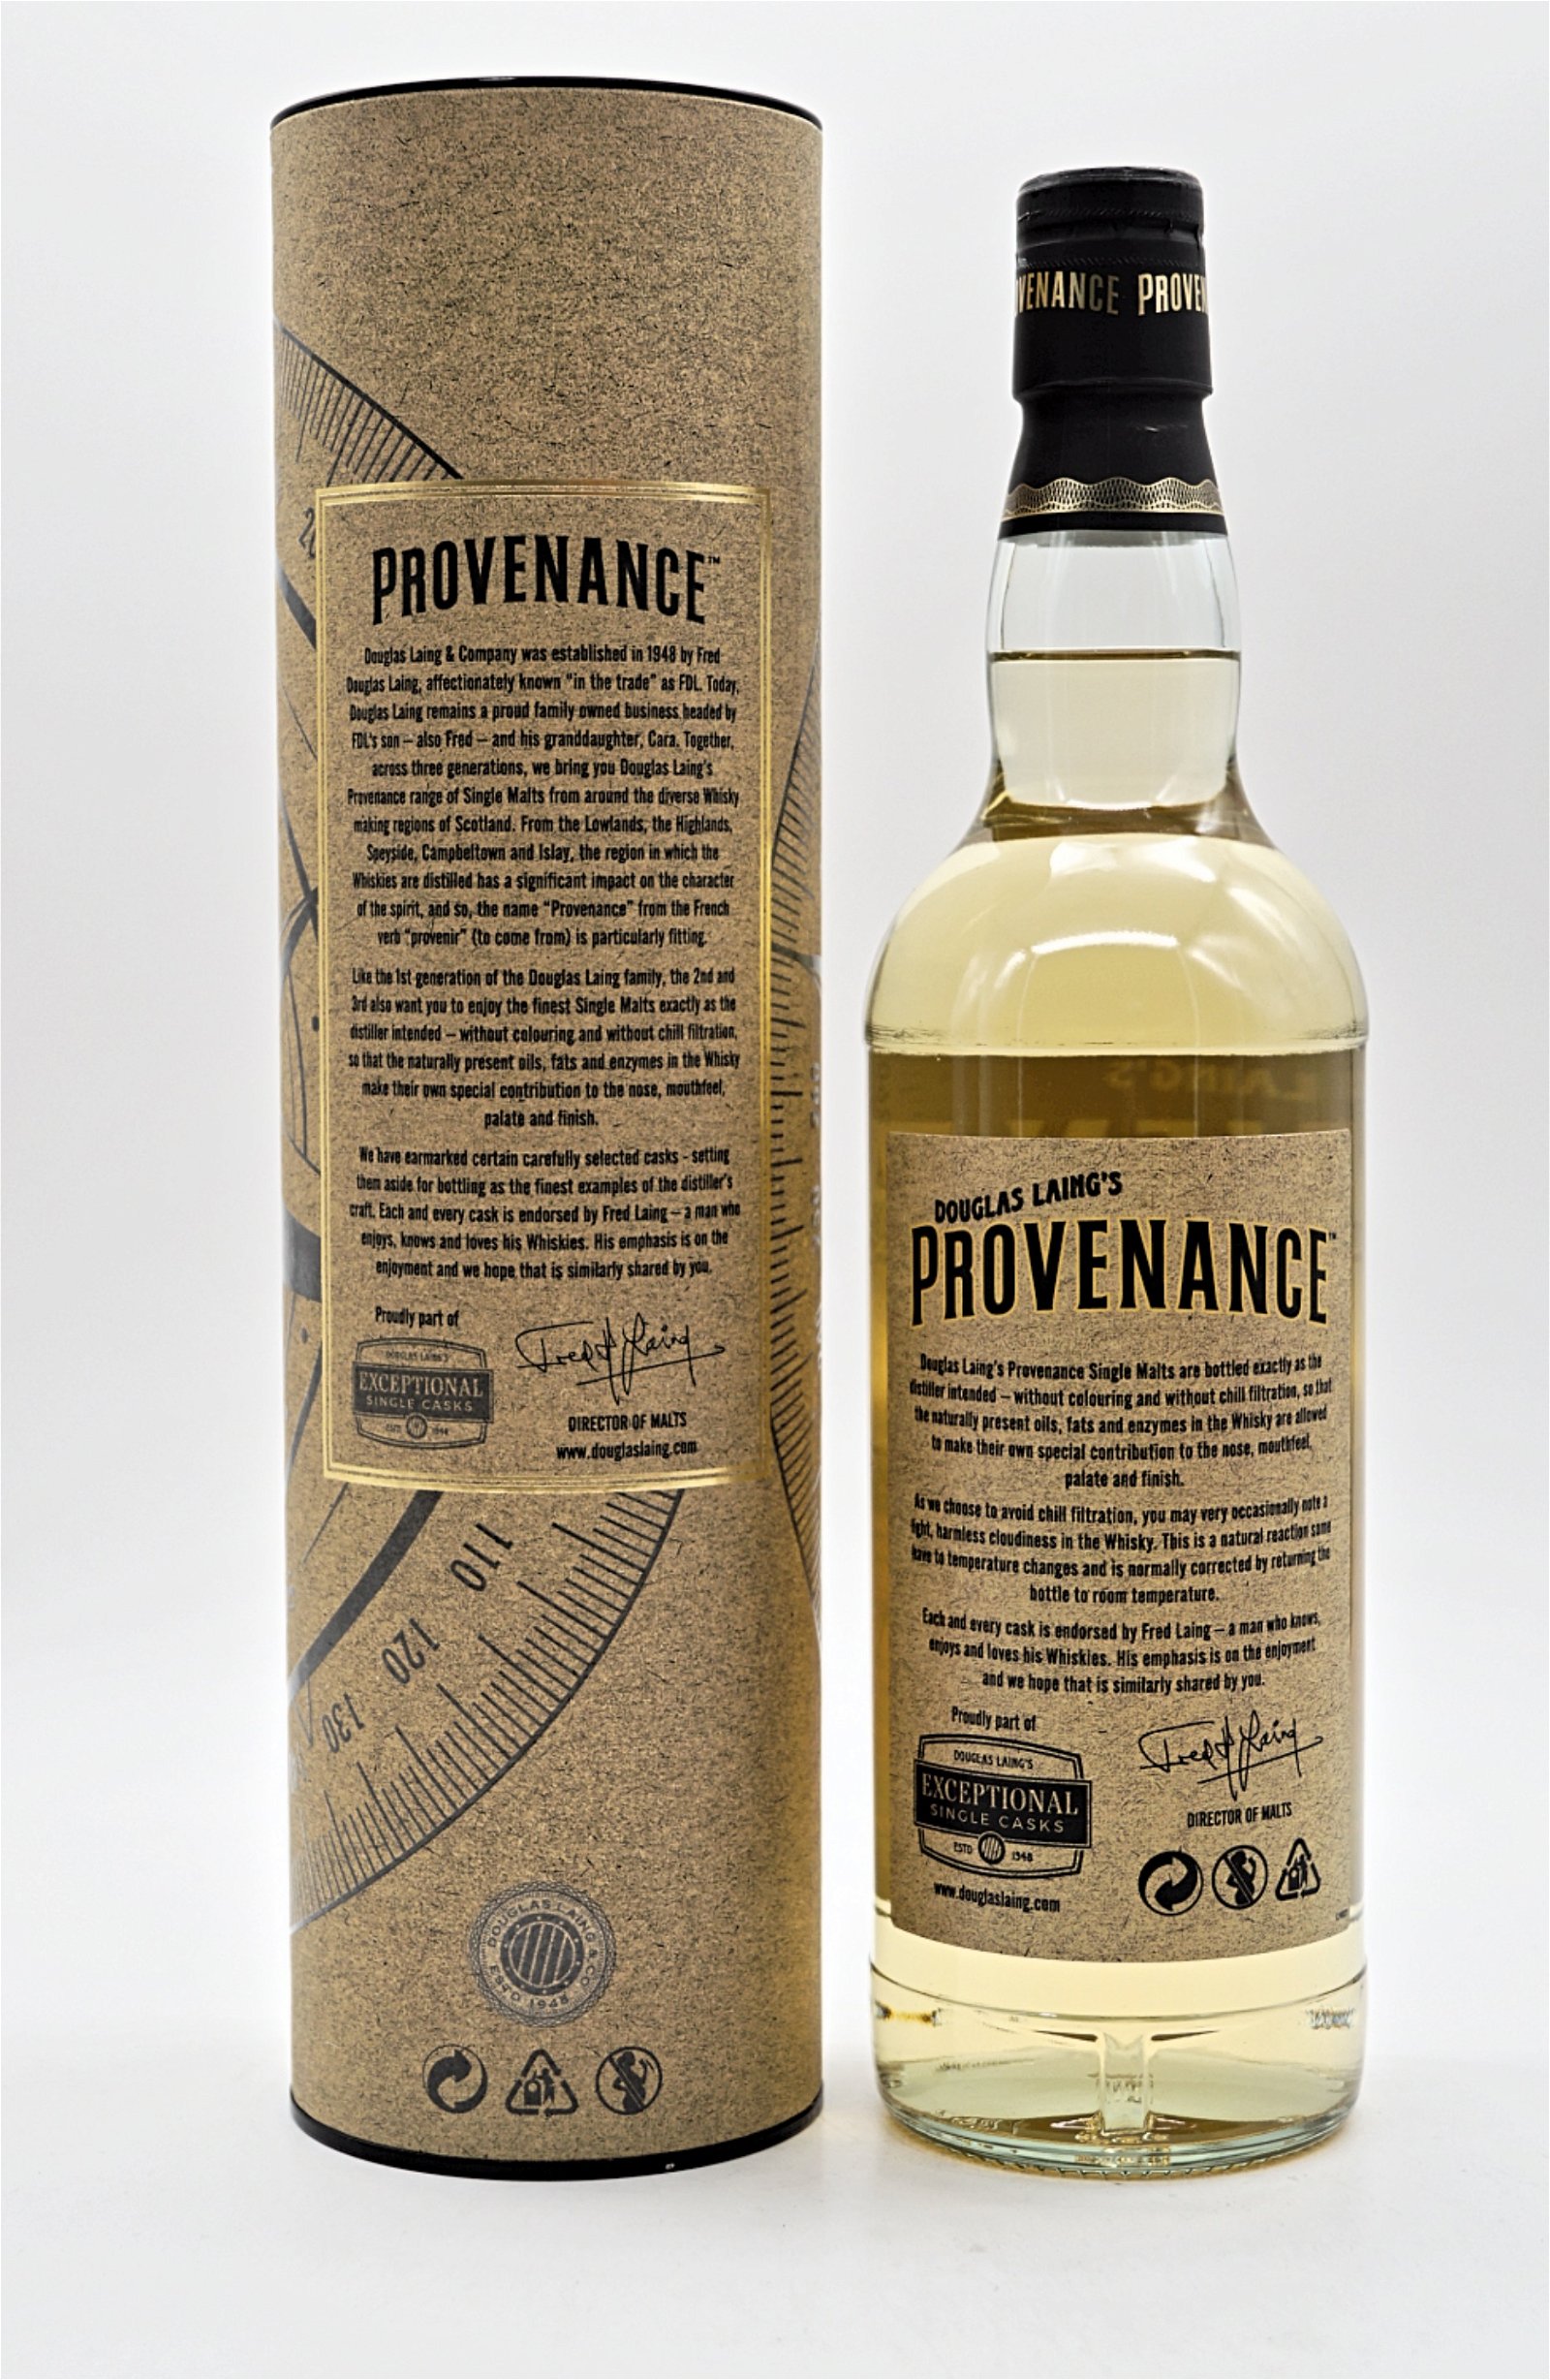 Provenance Mortlach Distillery 10 Jahre 2008/2018 379 Fl. Single Cask Single Malt Scotch Whisky